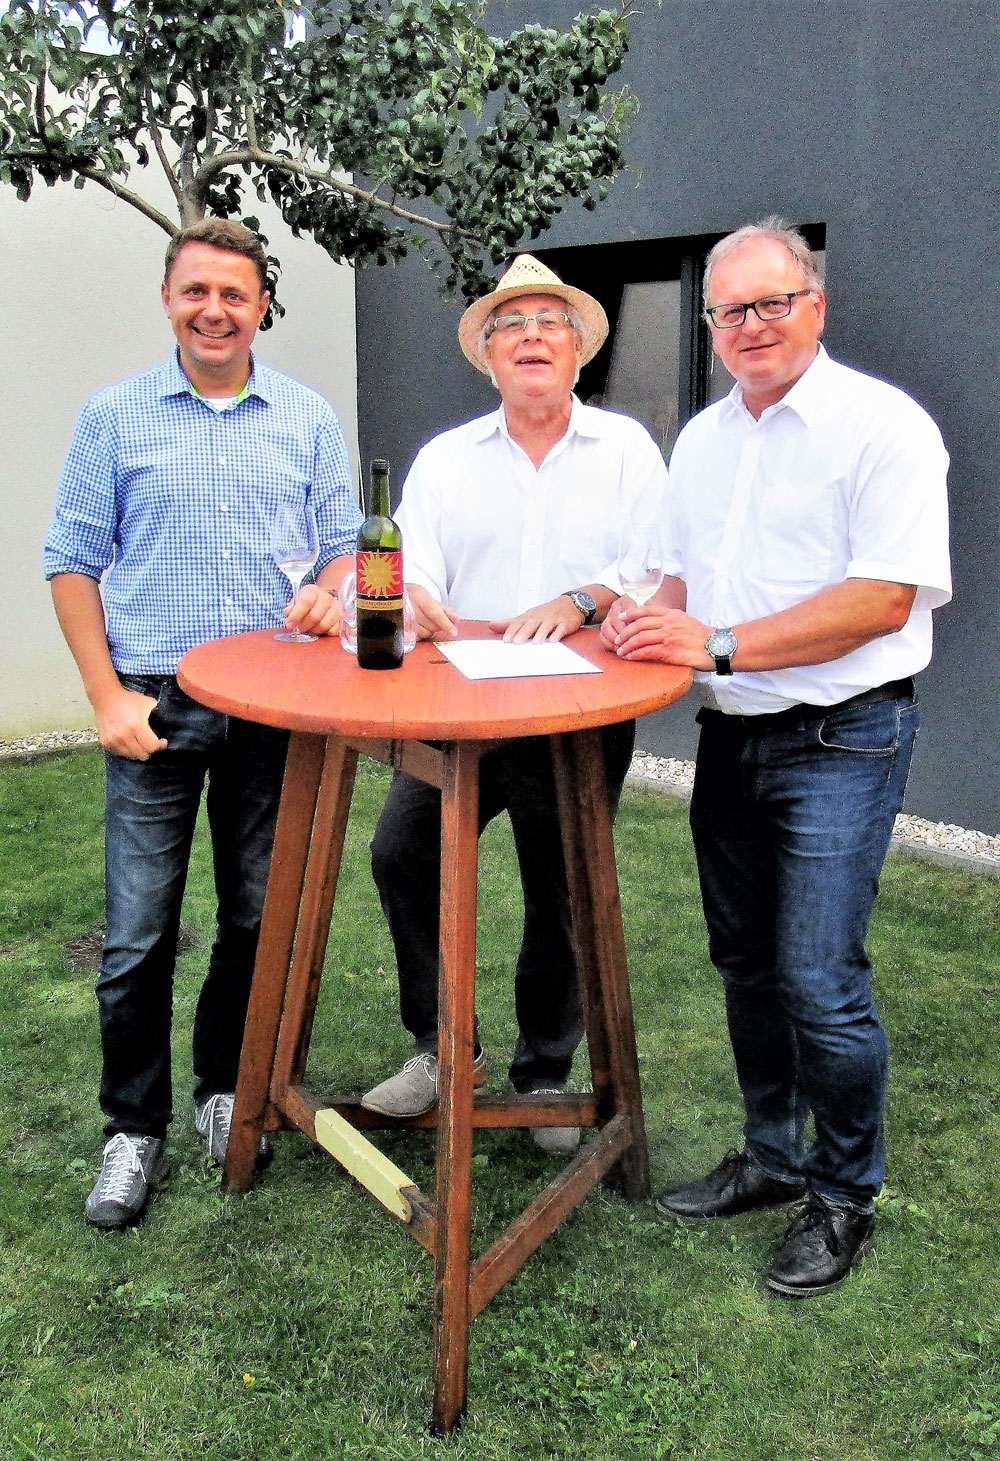 Drei Weinkenner: Verwaltungsleiter Michael Koller, Pater Friedrich Schleinzer und Pfarrer Dr. Thomas Frauenlob (von links nach rechts)